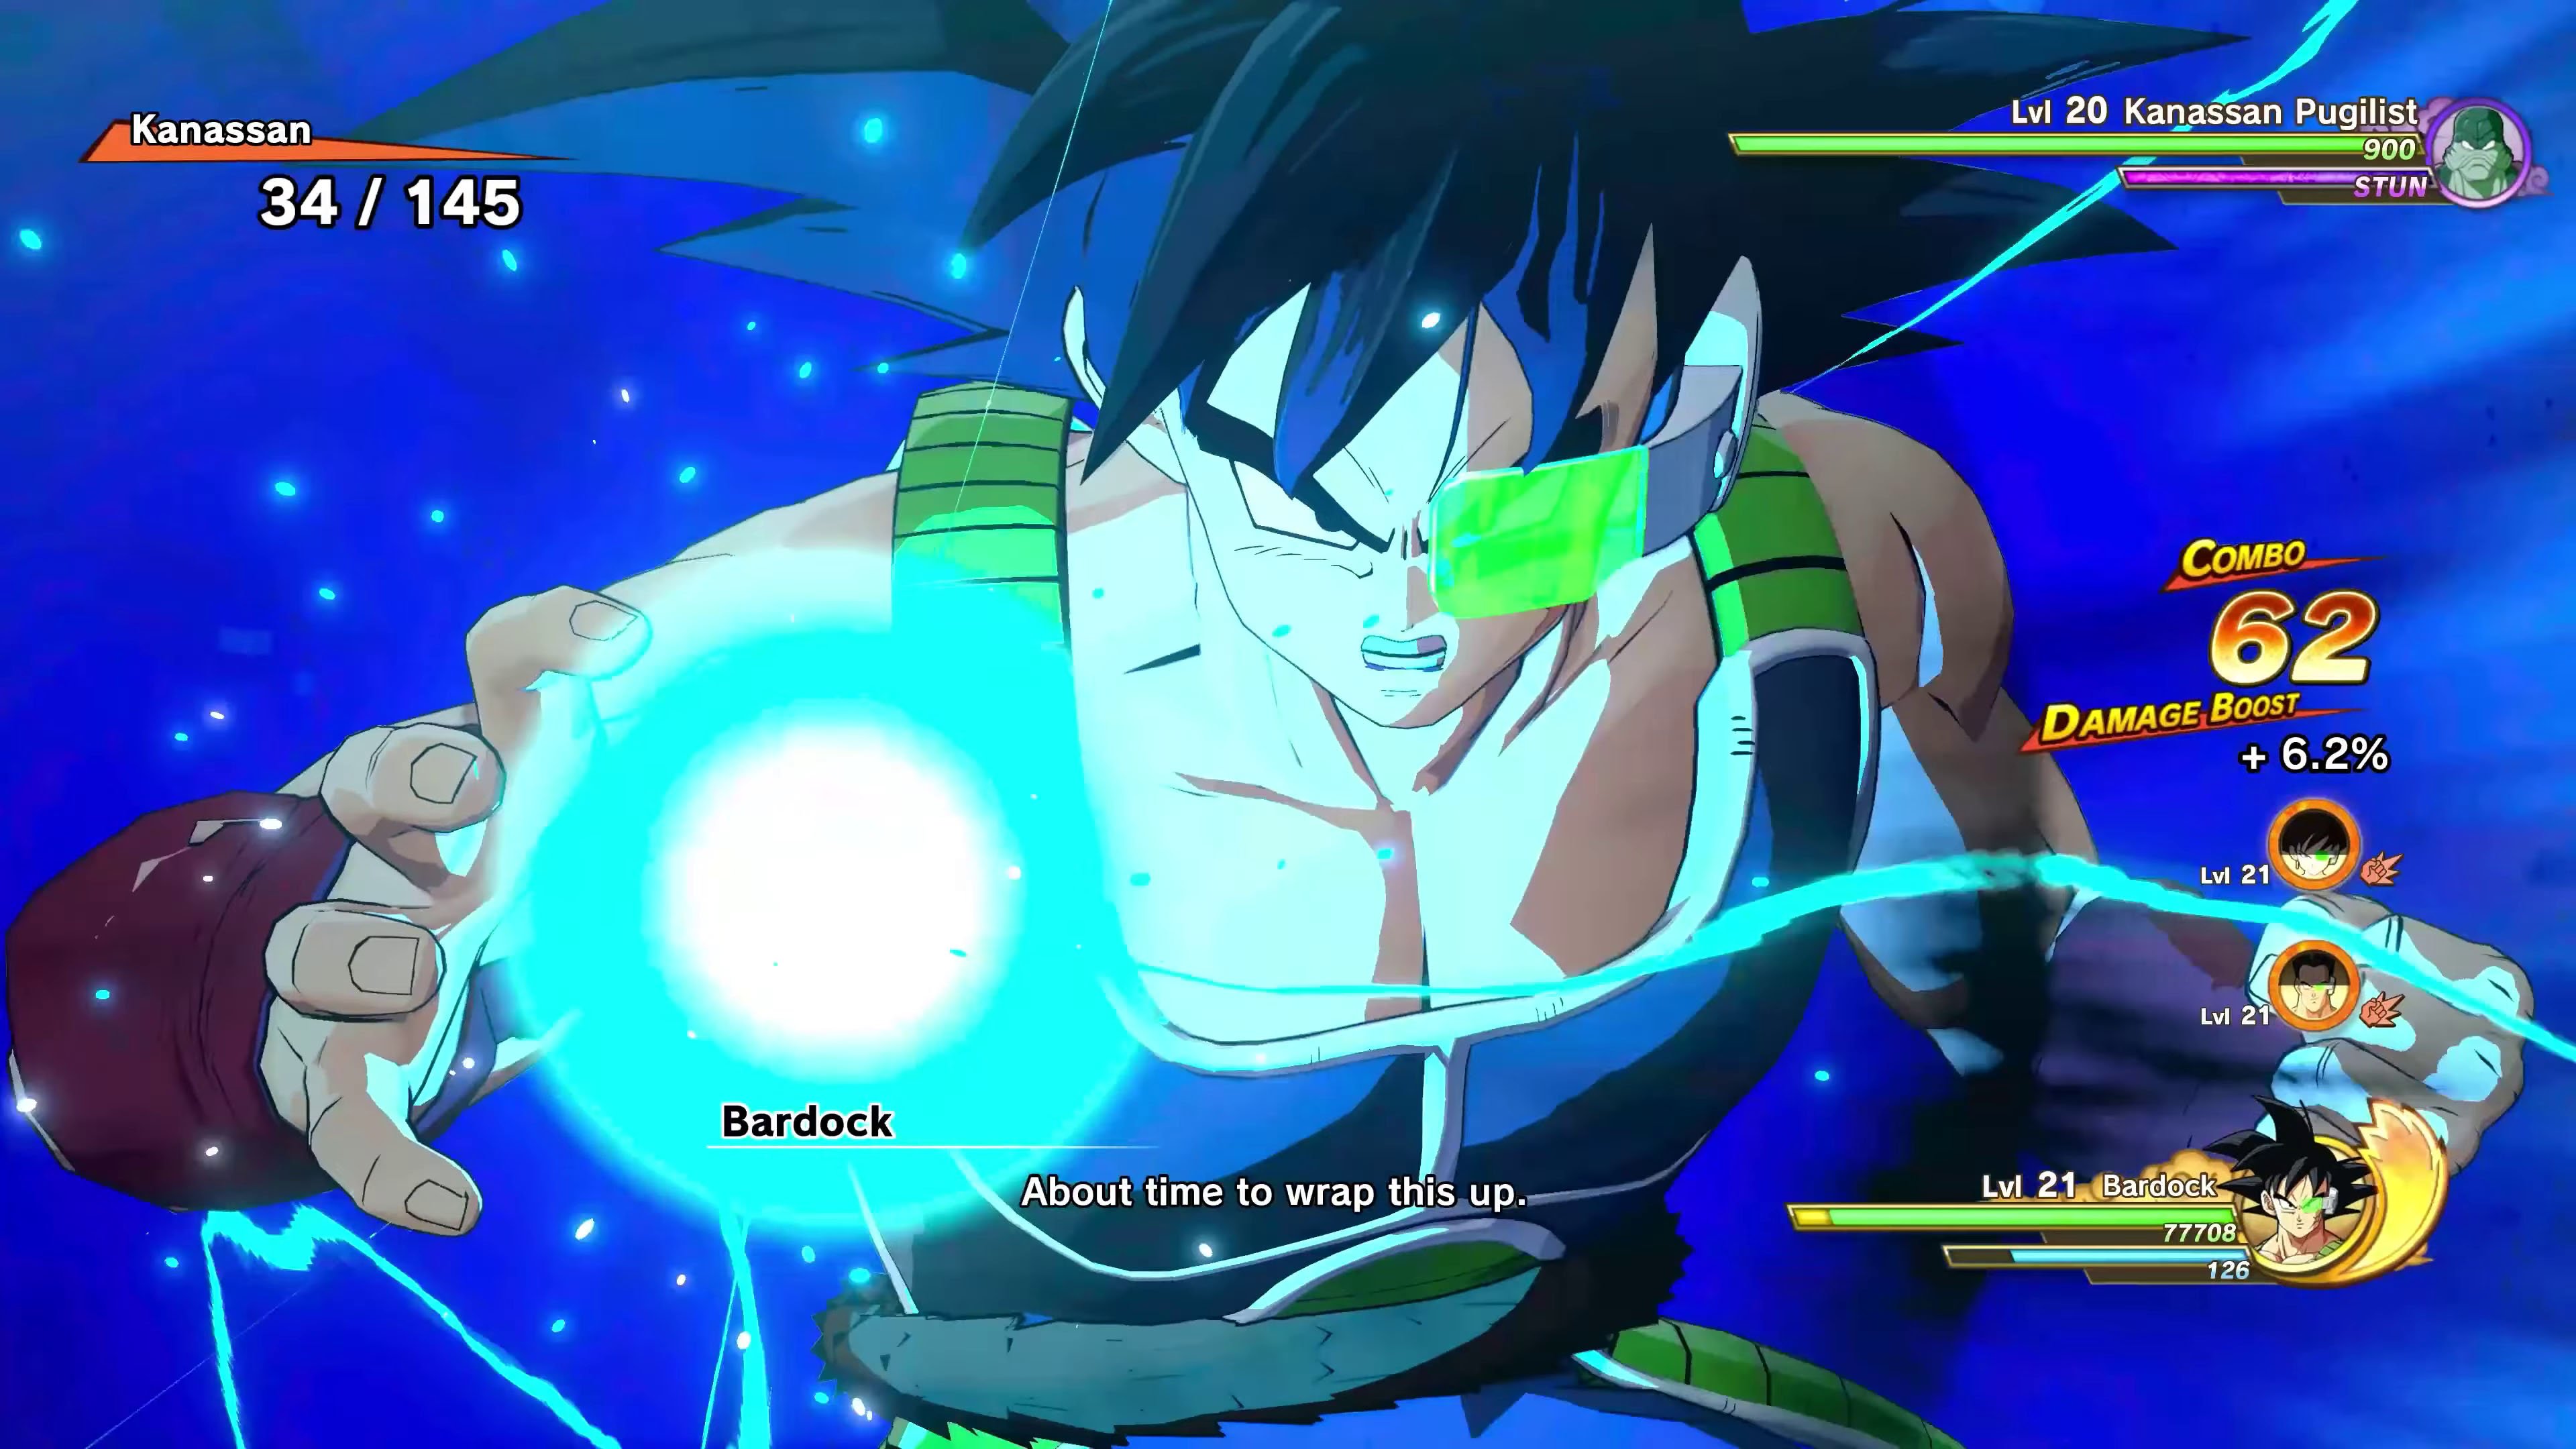 Goku Plays Dragon Ball Z Kakarot (Part 13)